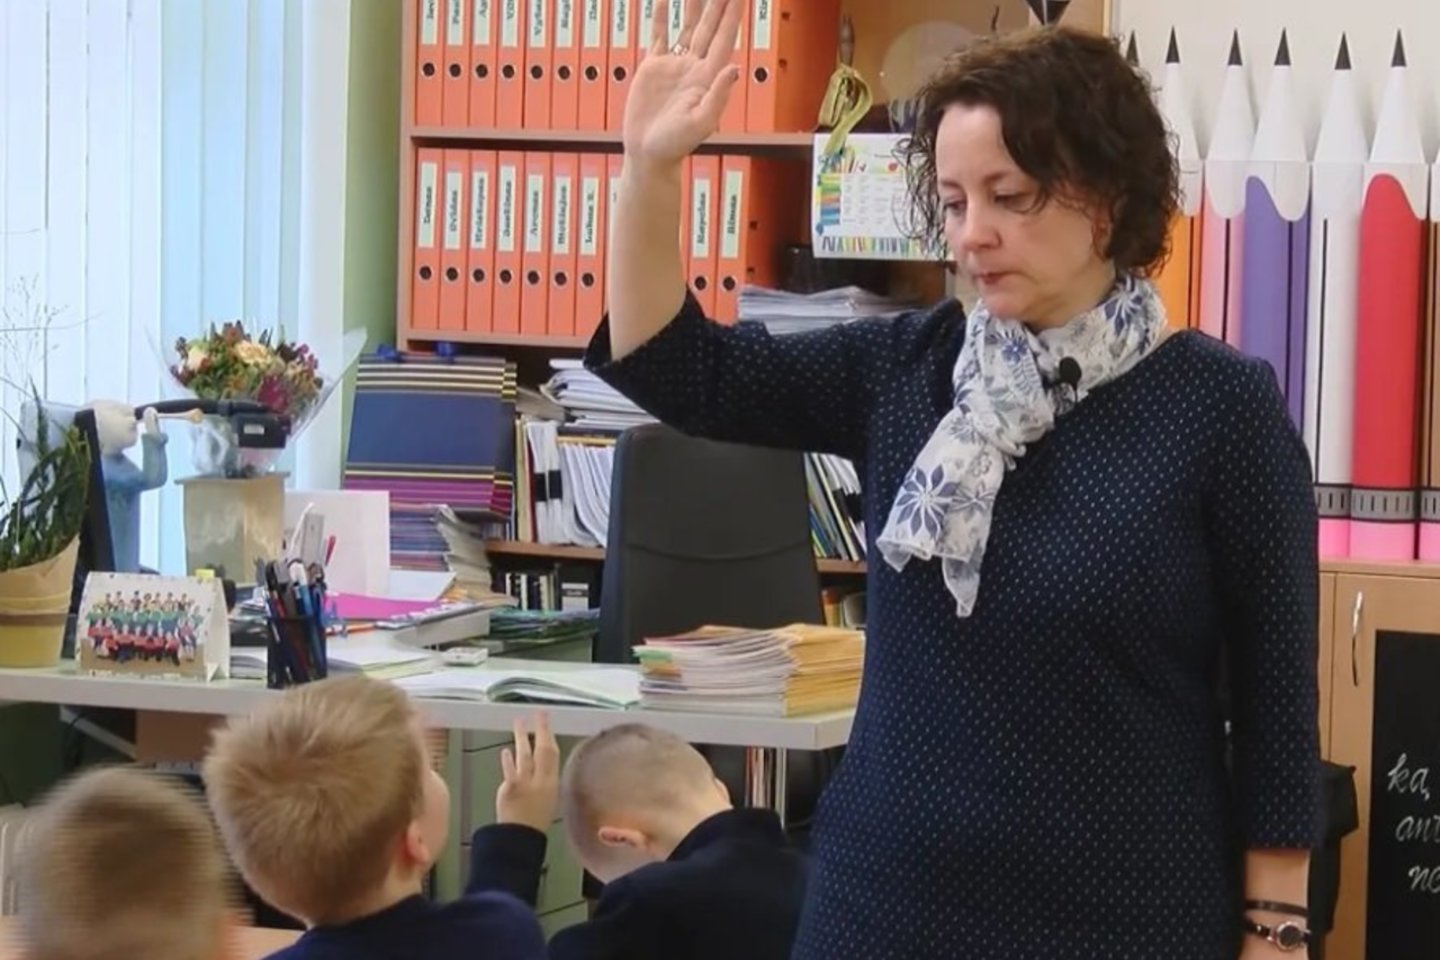  Šiemet A.Sakalienė tapo inovatyviausia pradinių klasių mokytoja Lietuvoje.